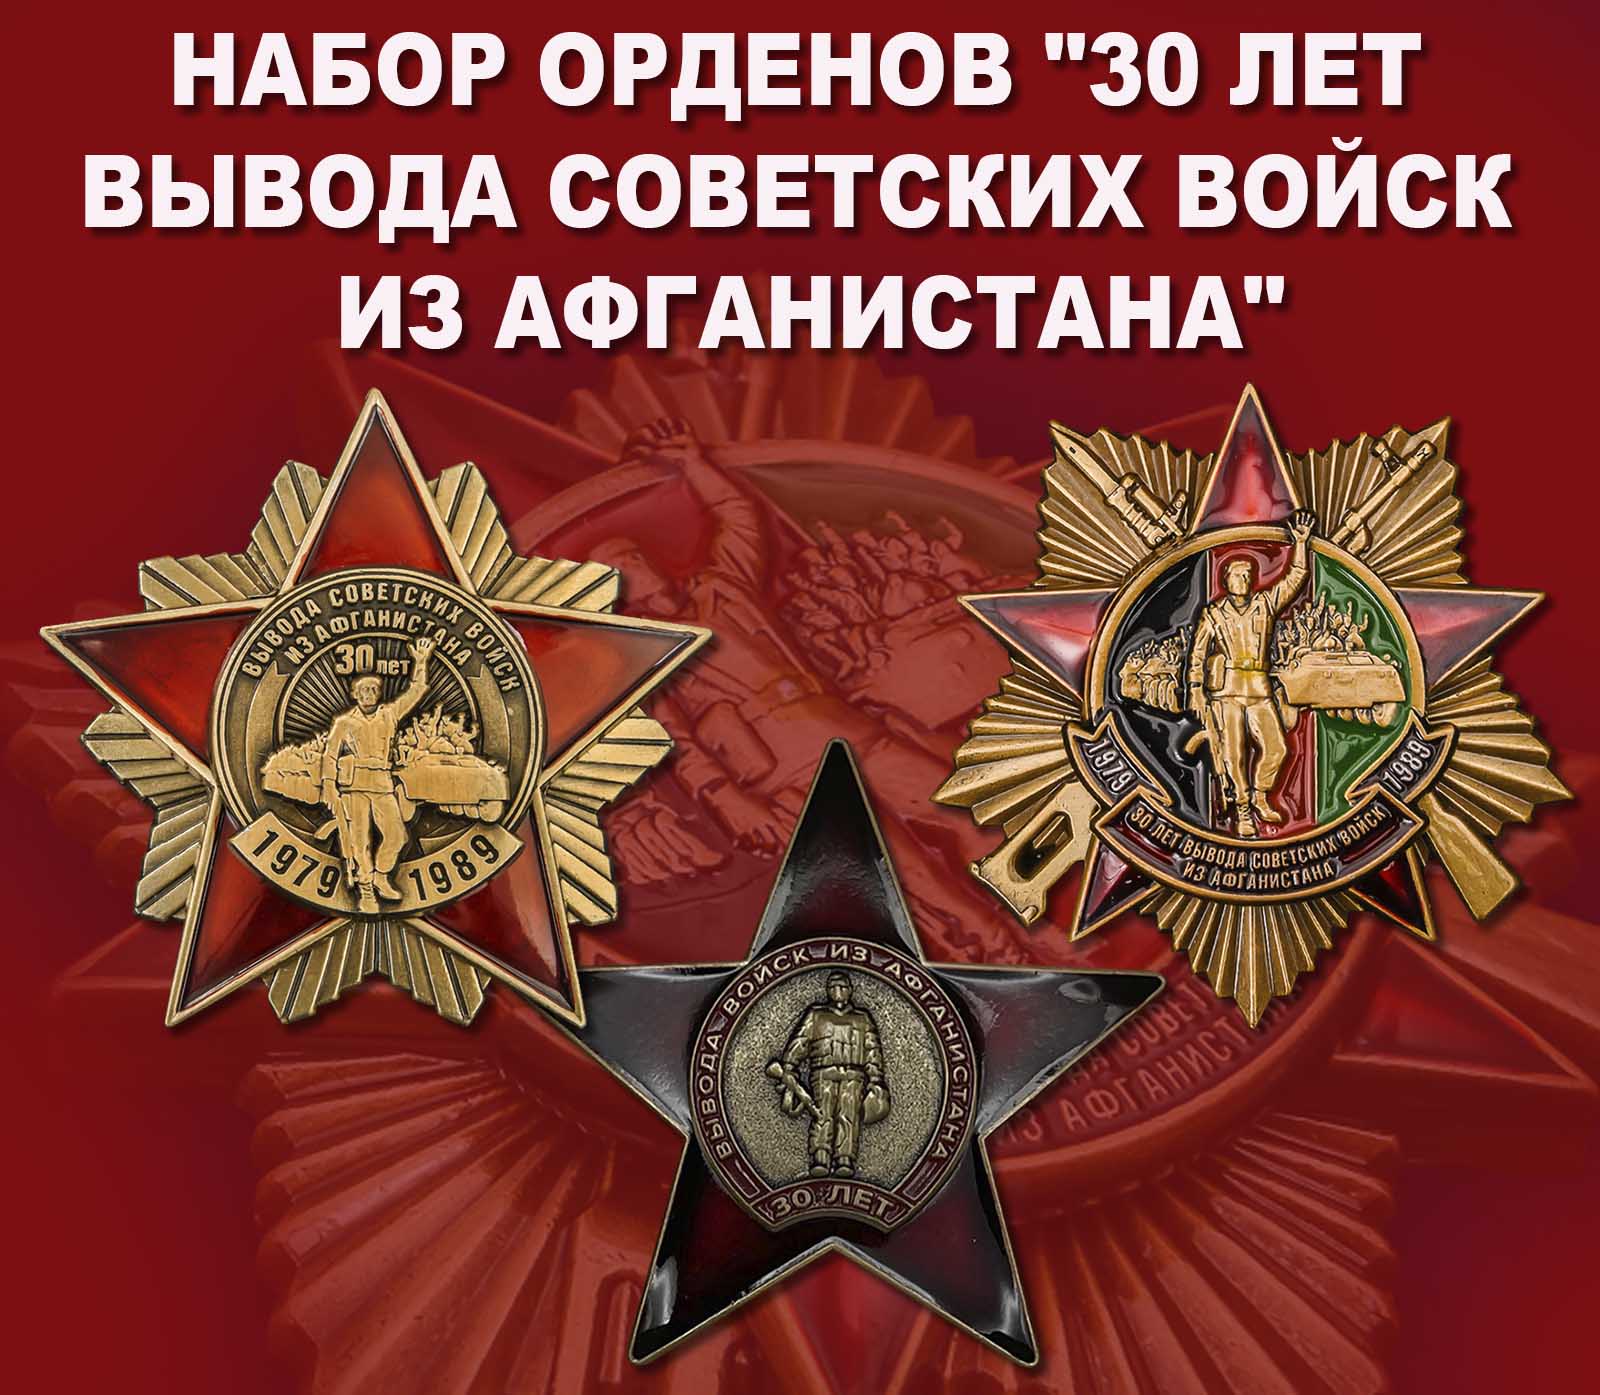 Купить набор орденов "30 лет вывода Советских войск из Афганистана"